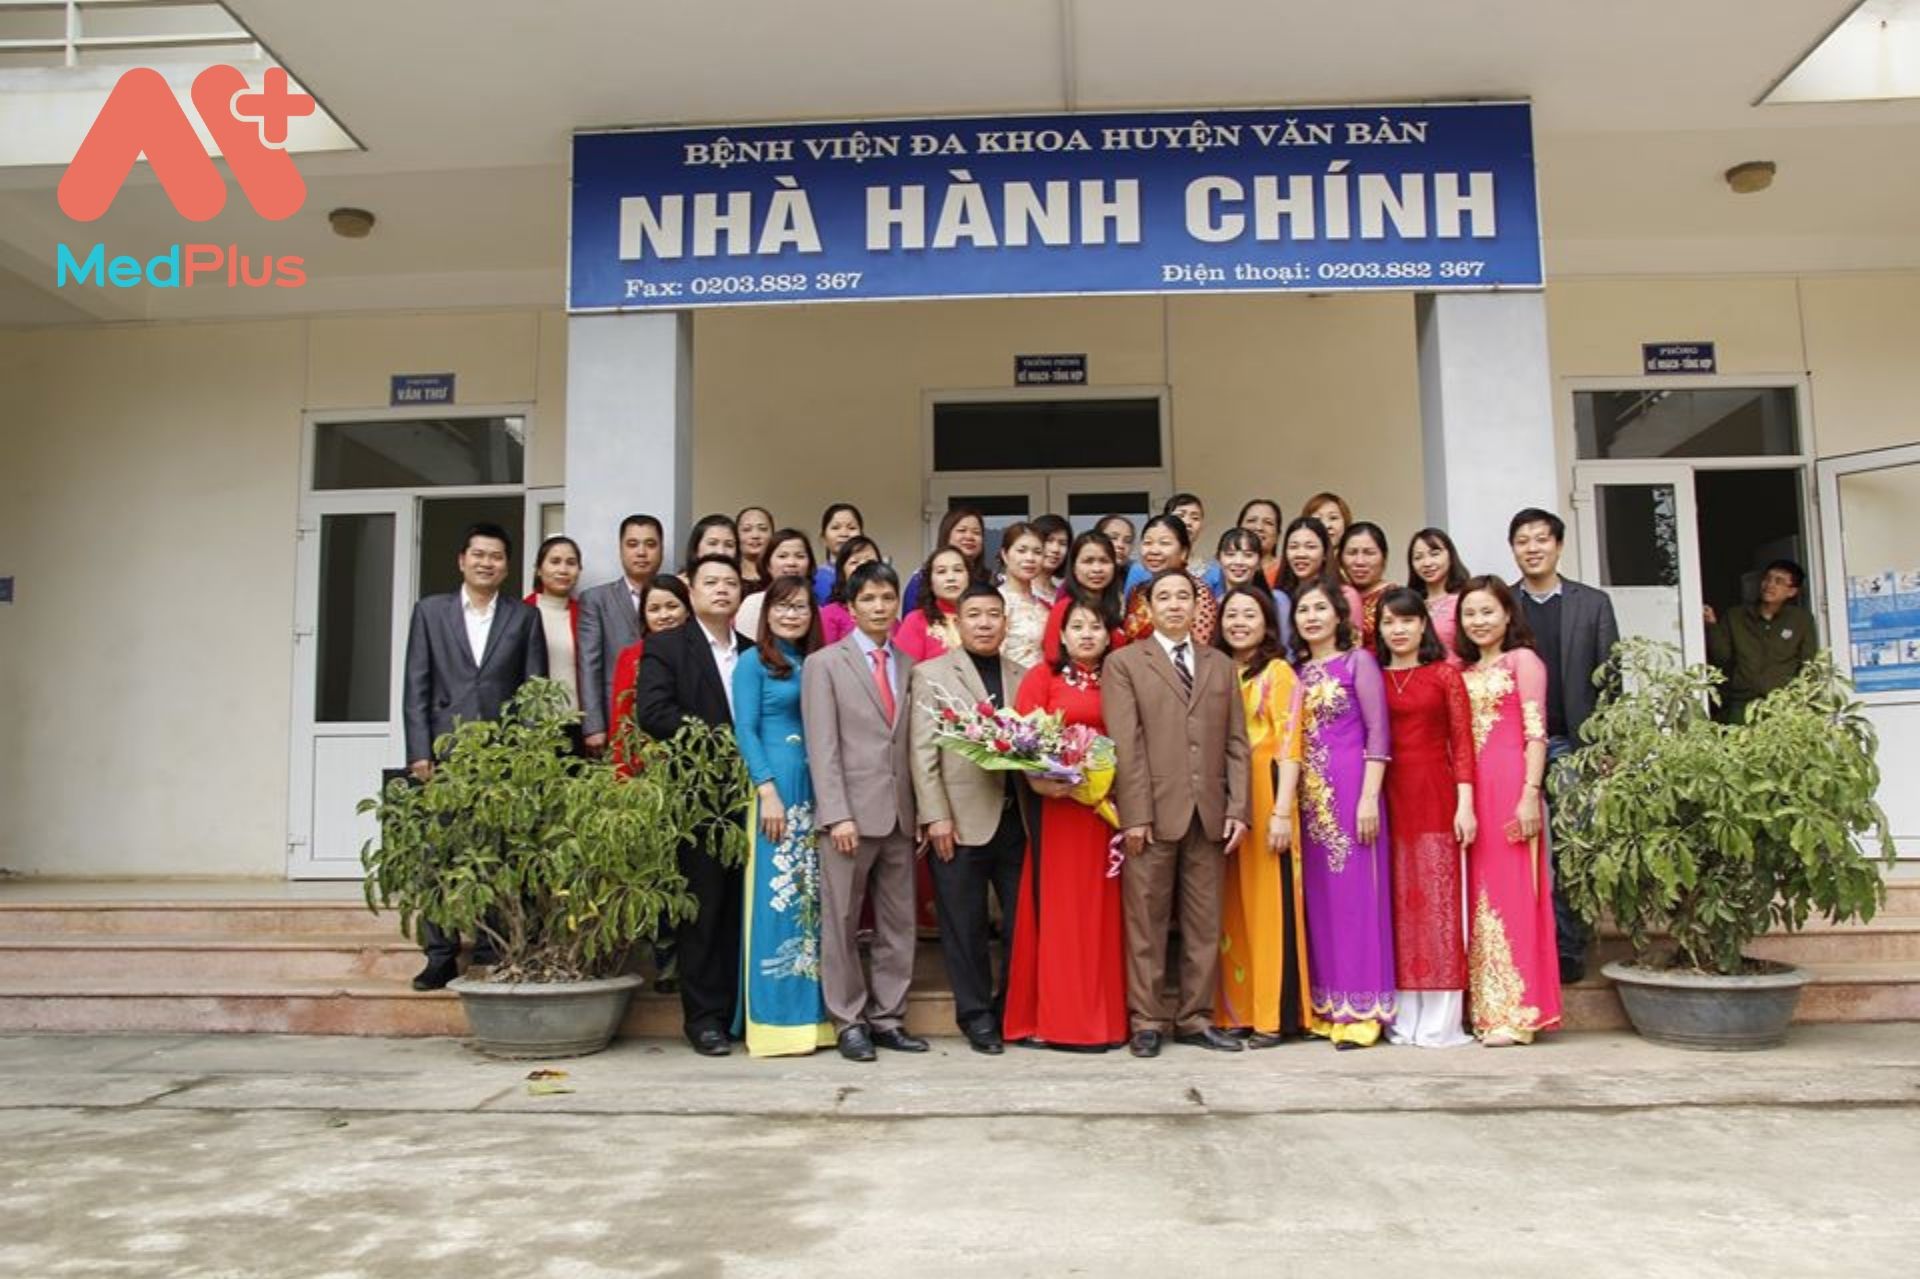 Cán bộ nhân viên BV đa khoa khu vực huyện Văn Bàn, Lào Cai